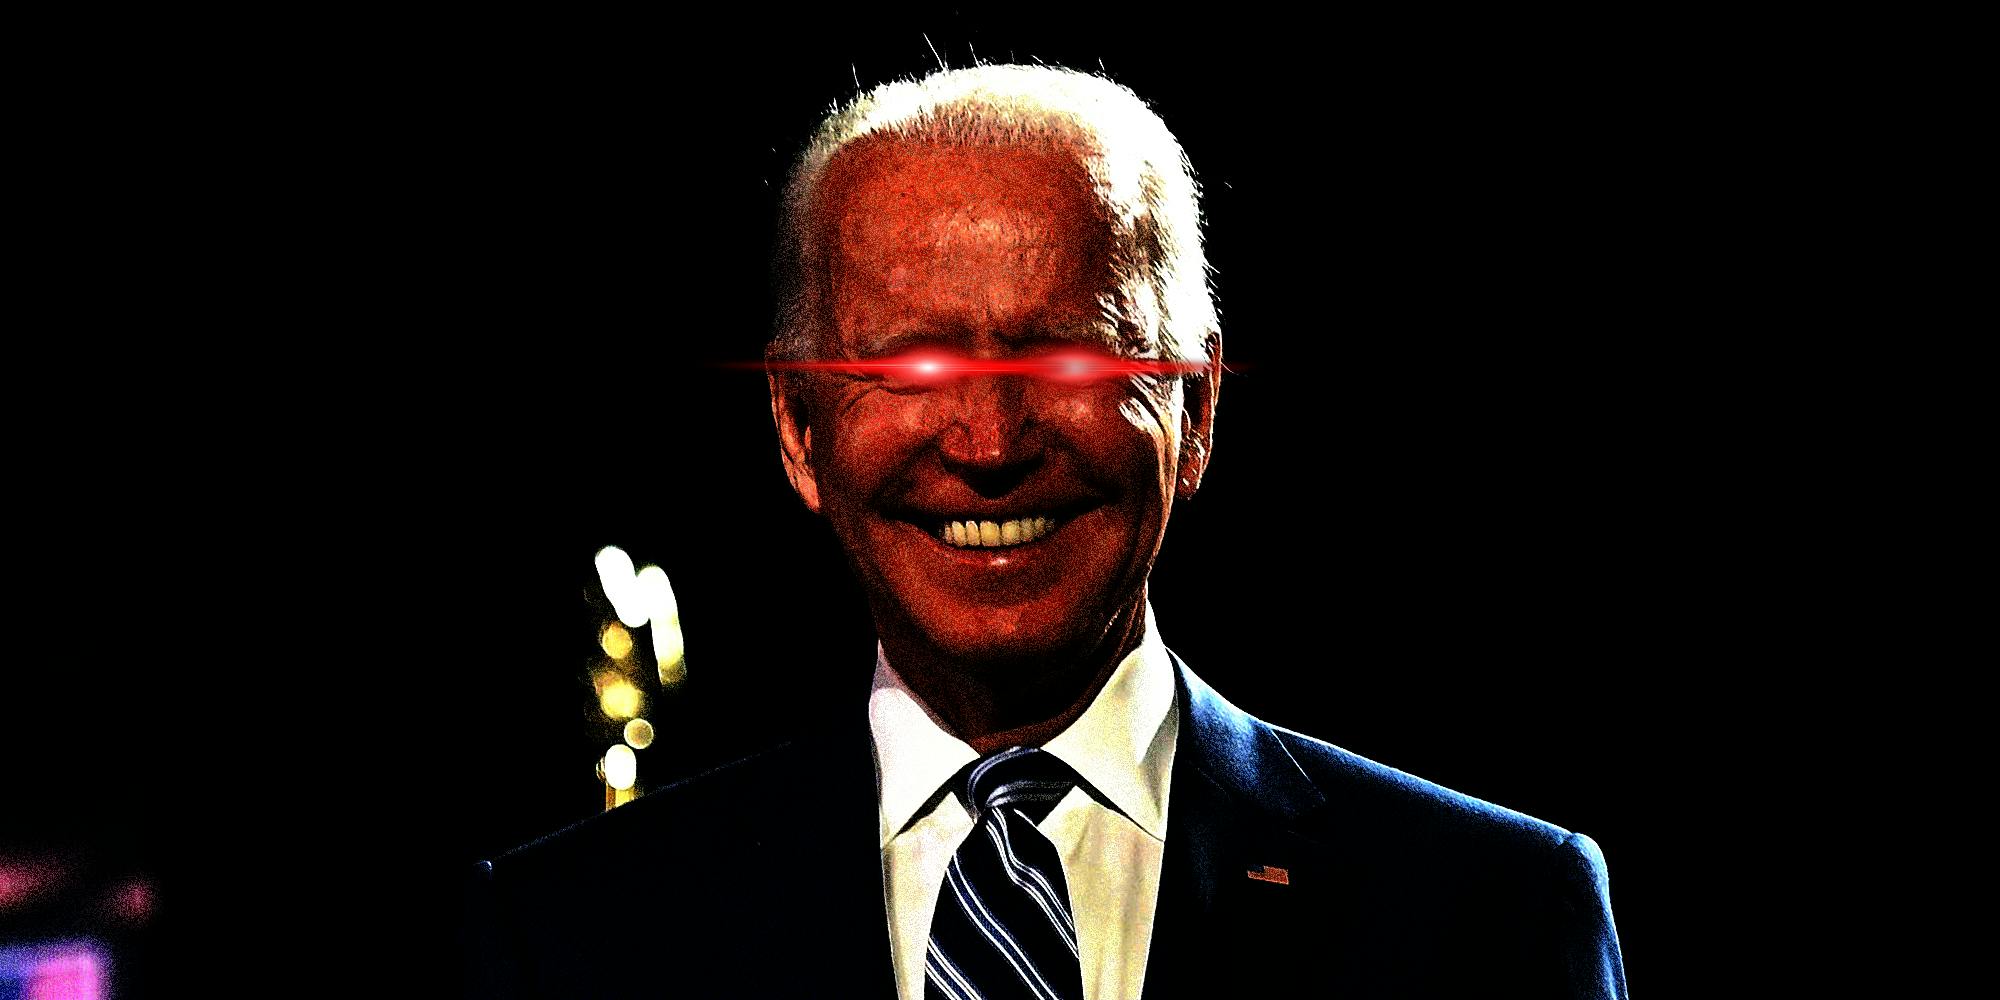 Joe Biden heavily edited "Kentucky Fried" style in a dark brandon meme